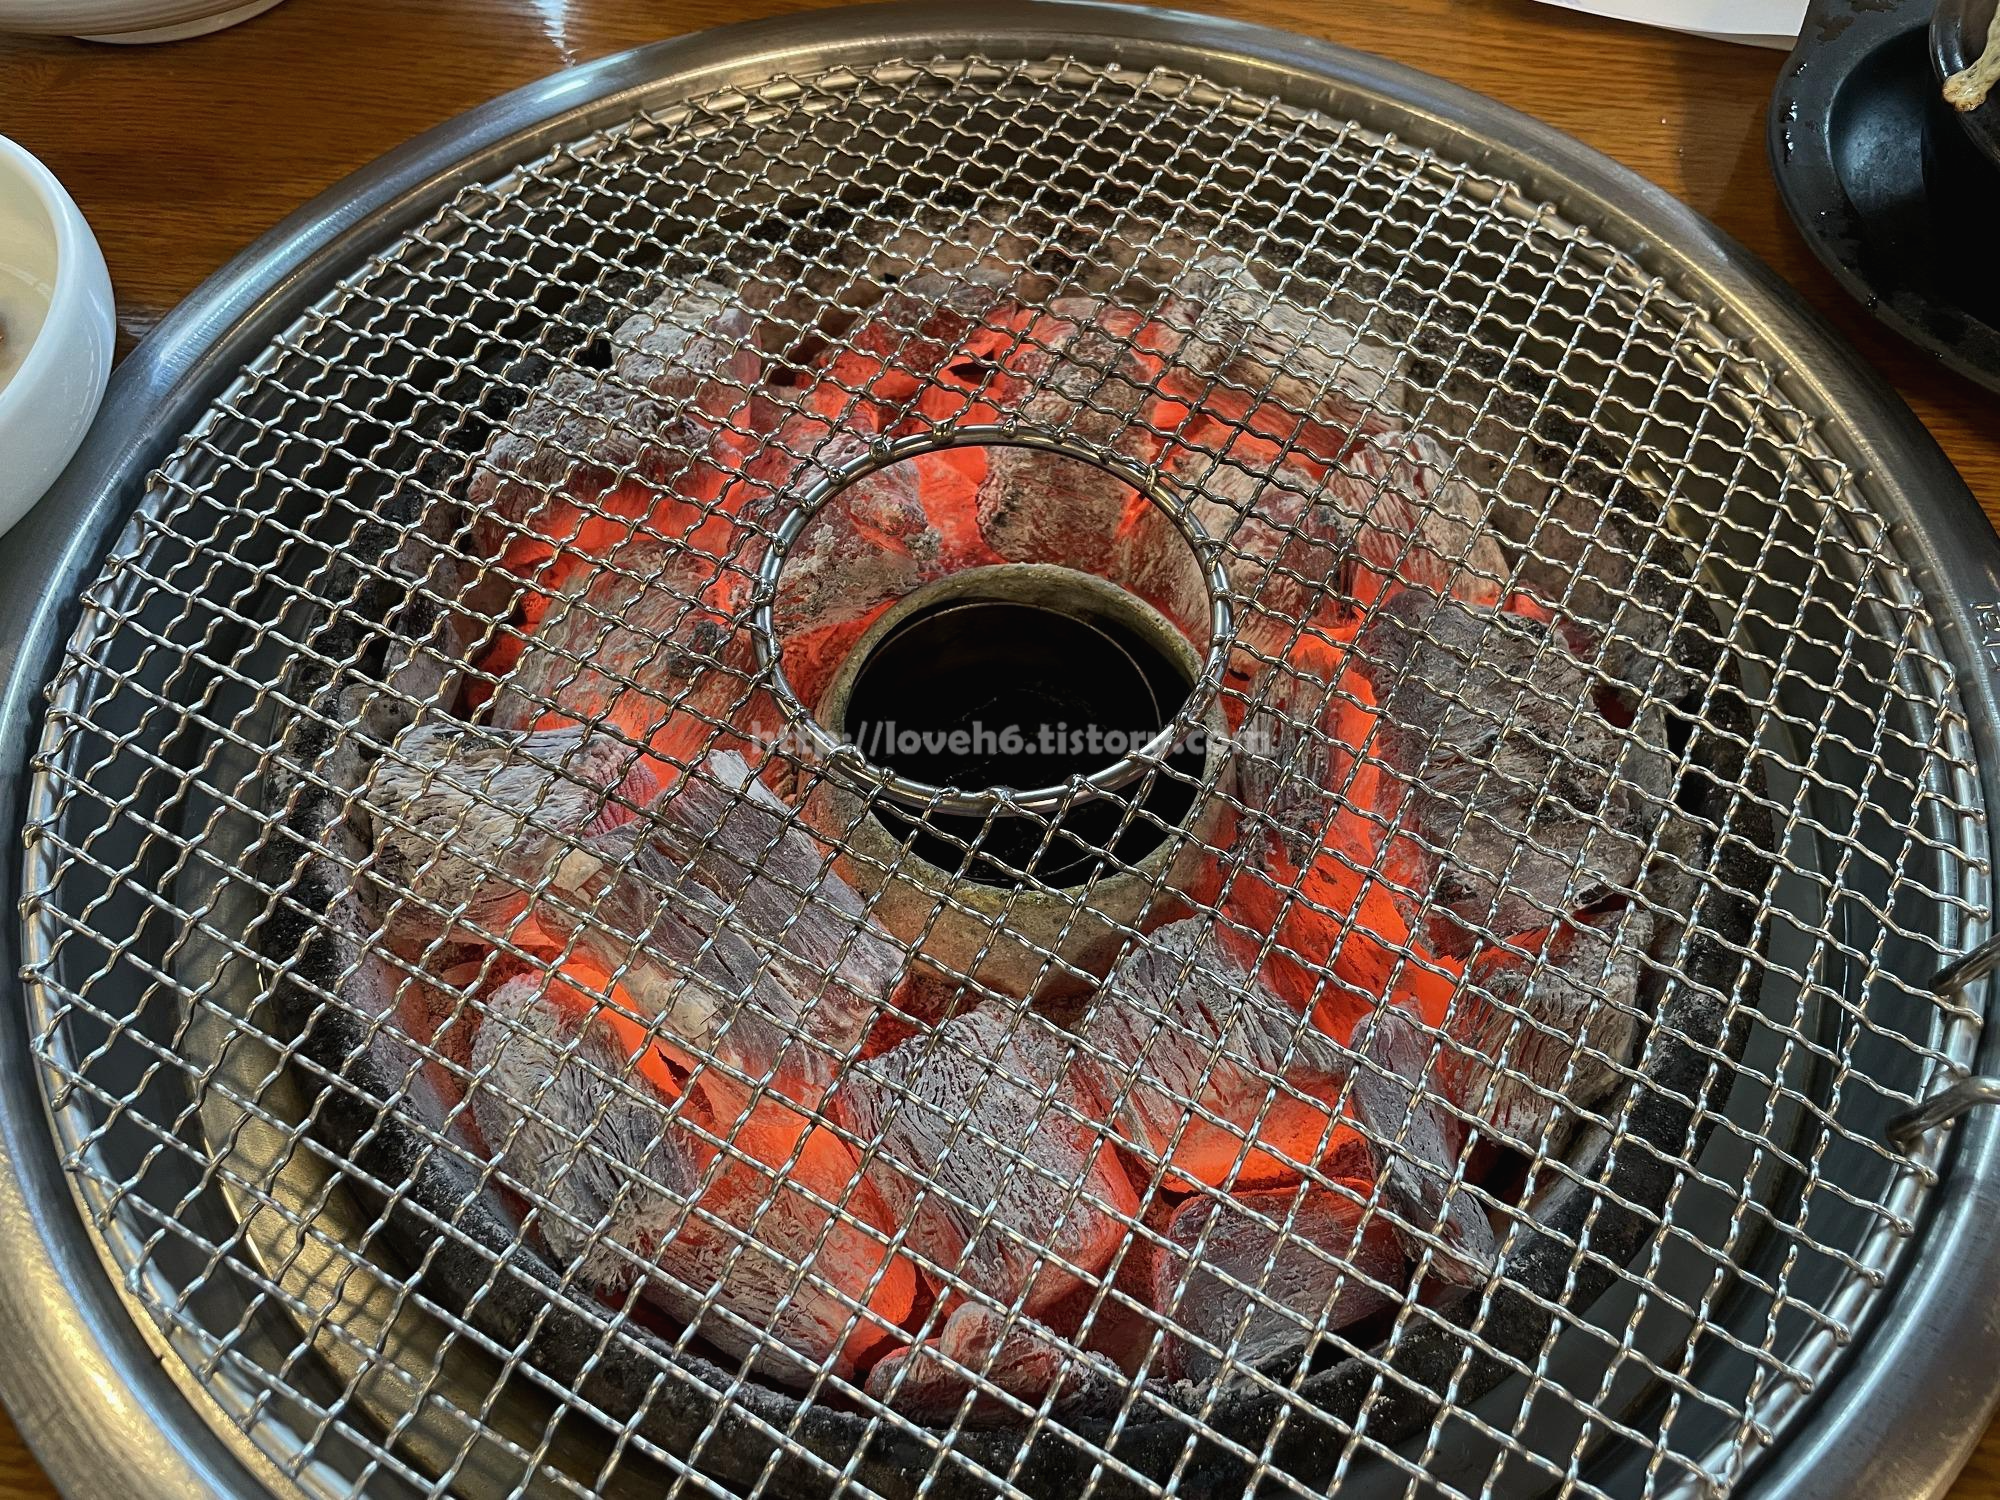 광양숯불구이 상무본점/Gwangyang Charcoal Grilled Sangmu Main Branch/불멍 하는 이유죠

고기를 먹을 수 있다는 기쁨 때문일까요

숯불만 보면 너무 좋더라구요

하하하ㅏㅏㅏㅏ